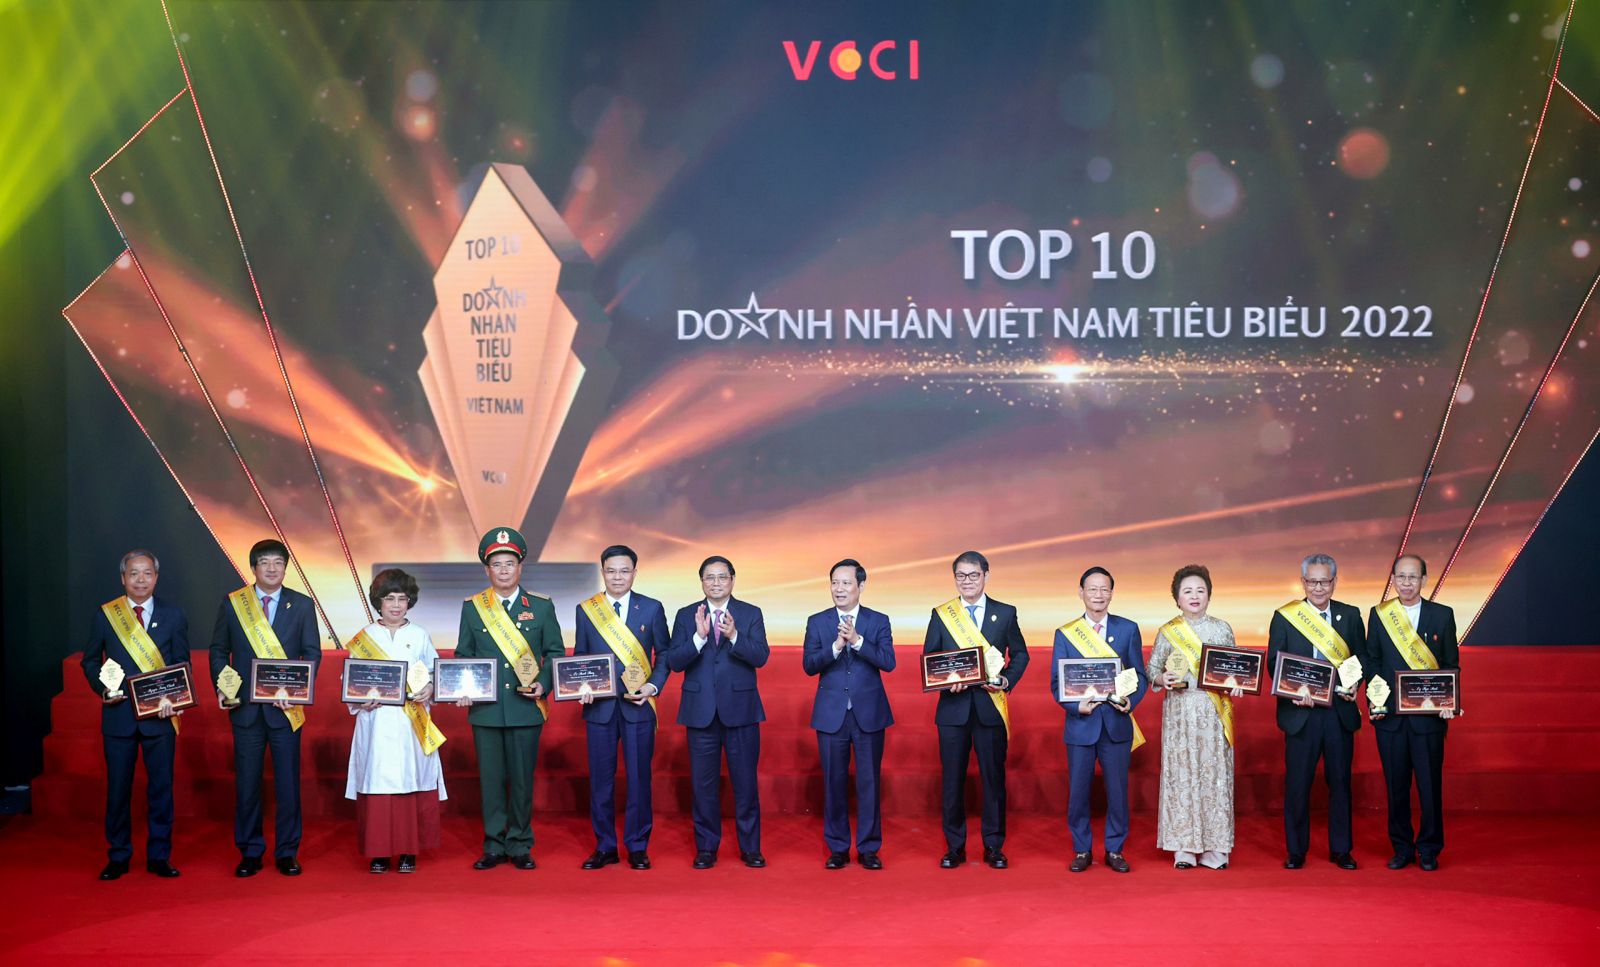 Ảnh 3: Top 10 Doanh nhân Việt Nam tiêu biểu 2022